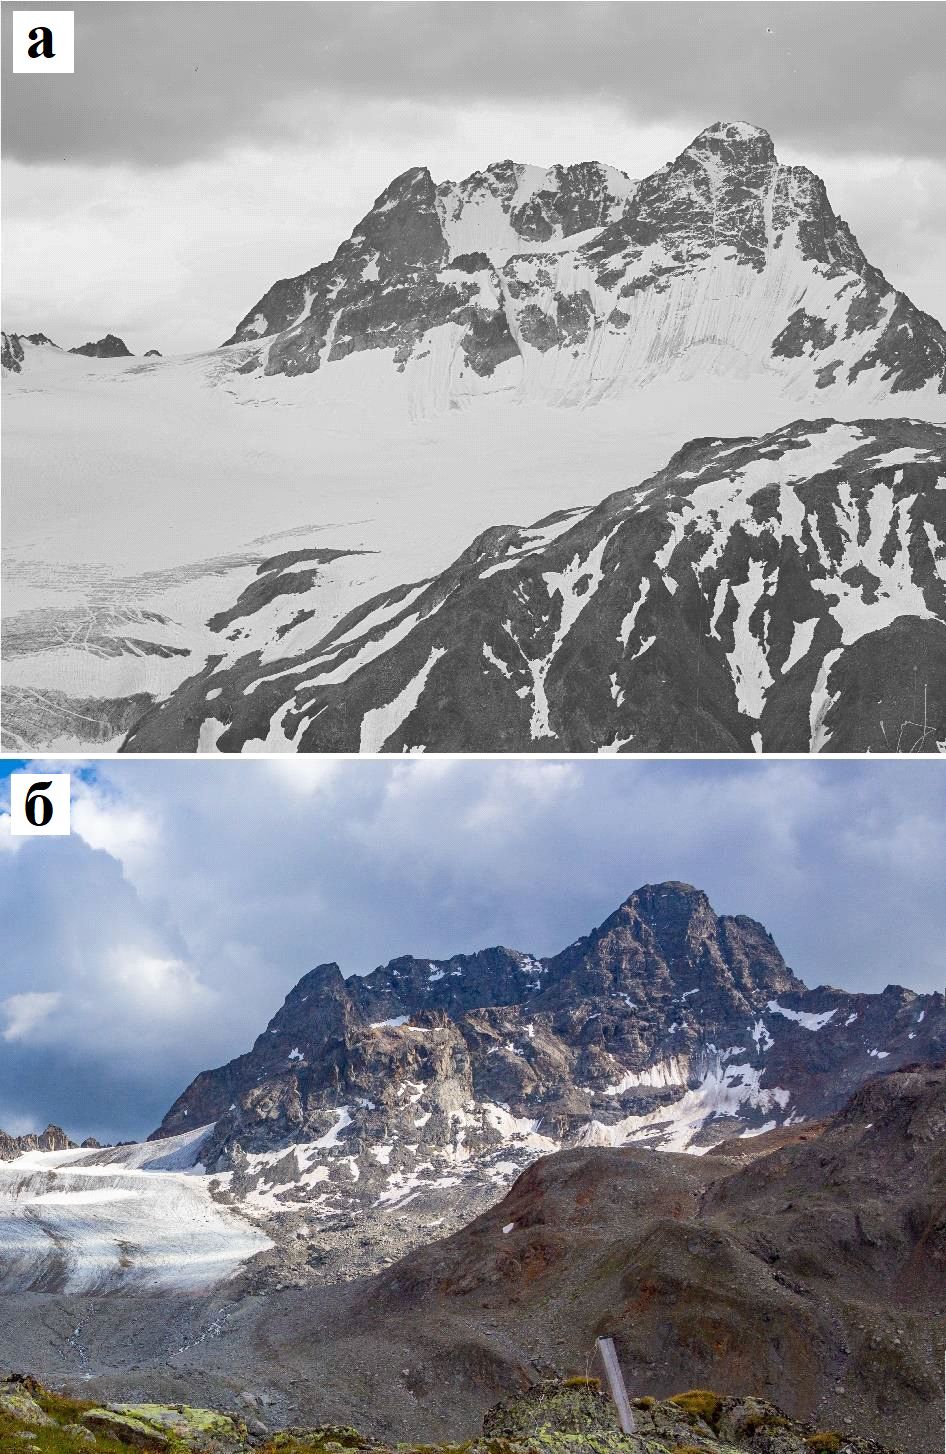 Рис.&nbsp;34. Северный фланг вершины Пиц-Кеш в Швейцарских Альпах в середине&nbsp;августа 1936&nbsp;года&nbsp;(а) и&nbsp;2020&nbsp;года&nbsp;(б). В&nbsp;1936&nbsp;году крутые скальные склоны были полностью покрыты ледяными фартуками, от&nbsp;которых в&nbsp;2020&nbsp;году почти ничего не осталось. При этом явно возросла интенсивность камнепадов разных объемов (вплоть до 150&nbsp;000&nbsp;куб.&nbsp;м). Ранее чистый ледник Порчабелла (видный как сплошной белый покров на рисунке&nbsp;&#171;а&#187;) теперь почти полностью покрыт обломочным материалом (что хорошо видно на рисунке&nbsp;&#171;б&#187;)&nbsp;[3]